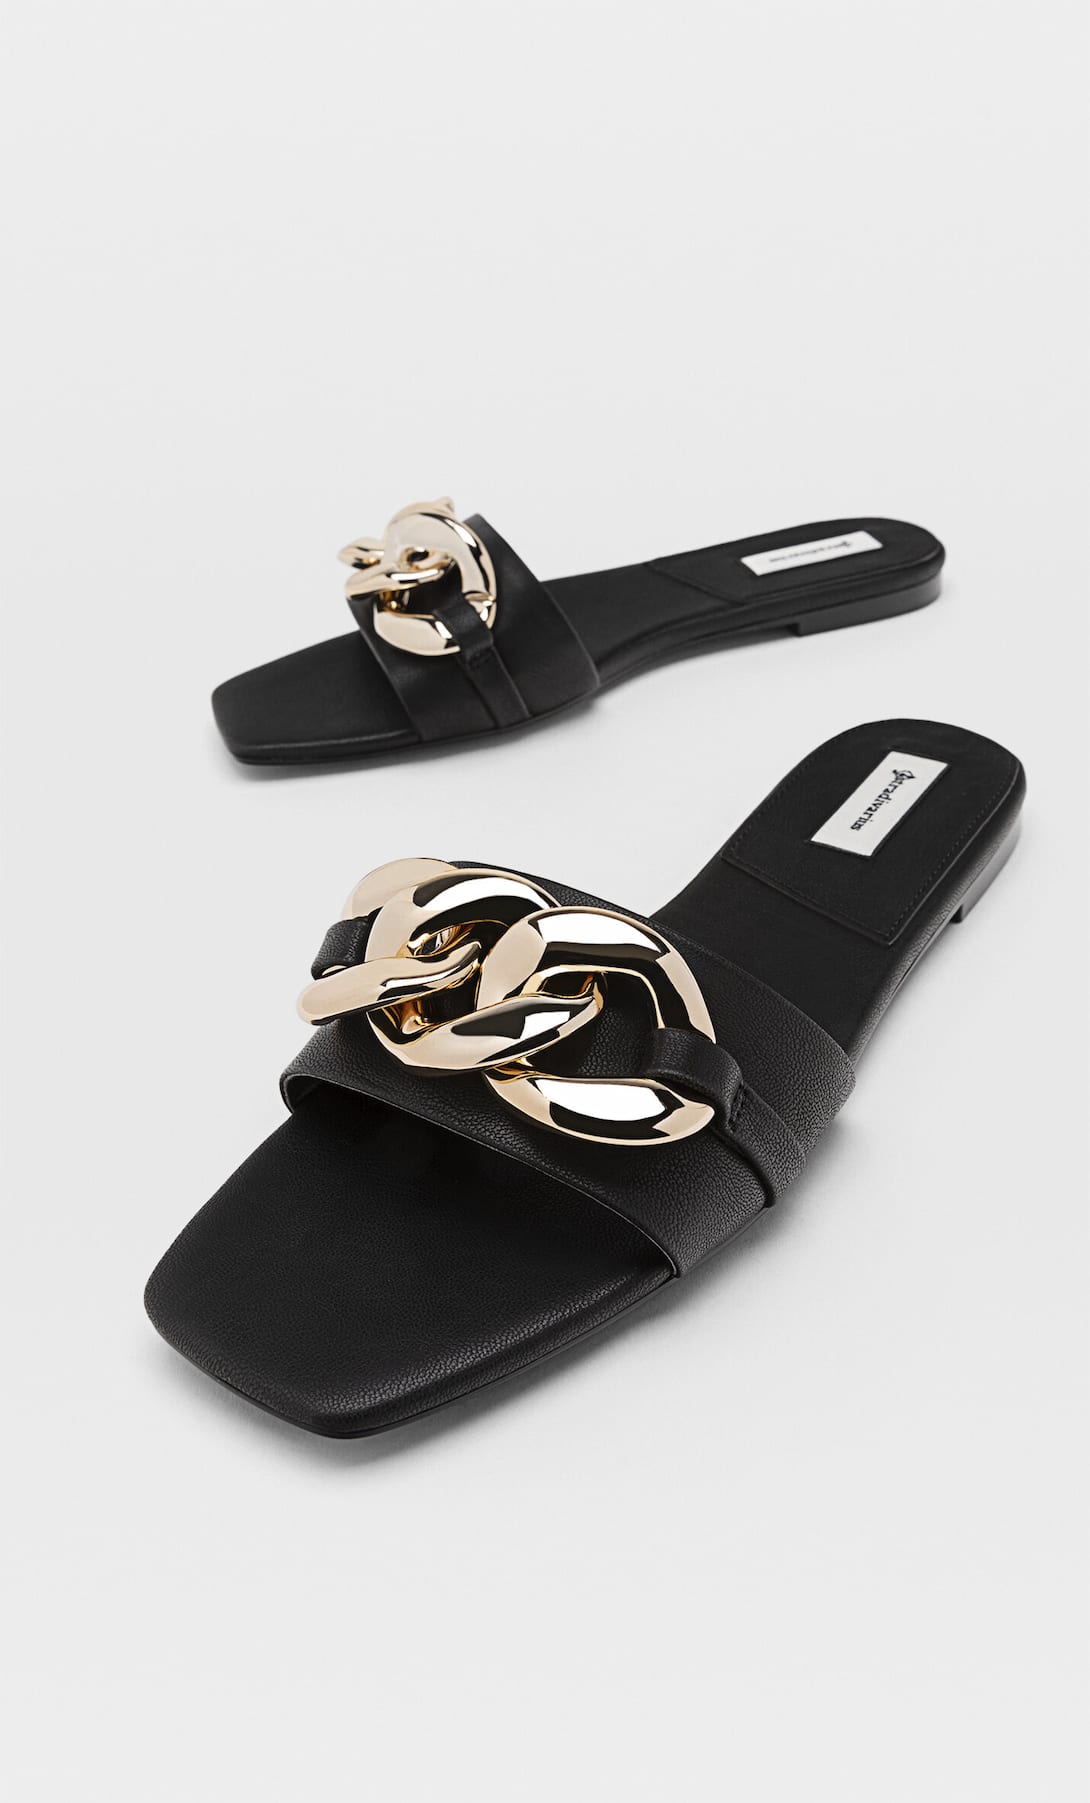 apoyo Planificado Traer Estas son las sandalias planas de Stradivarius inspiradas en Gucci